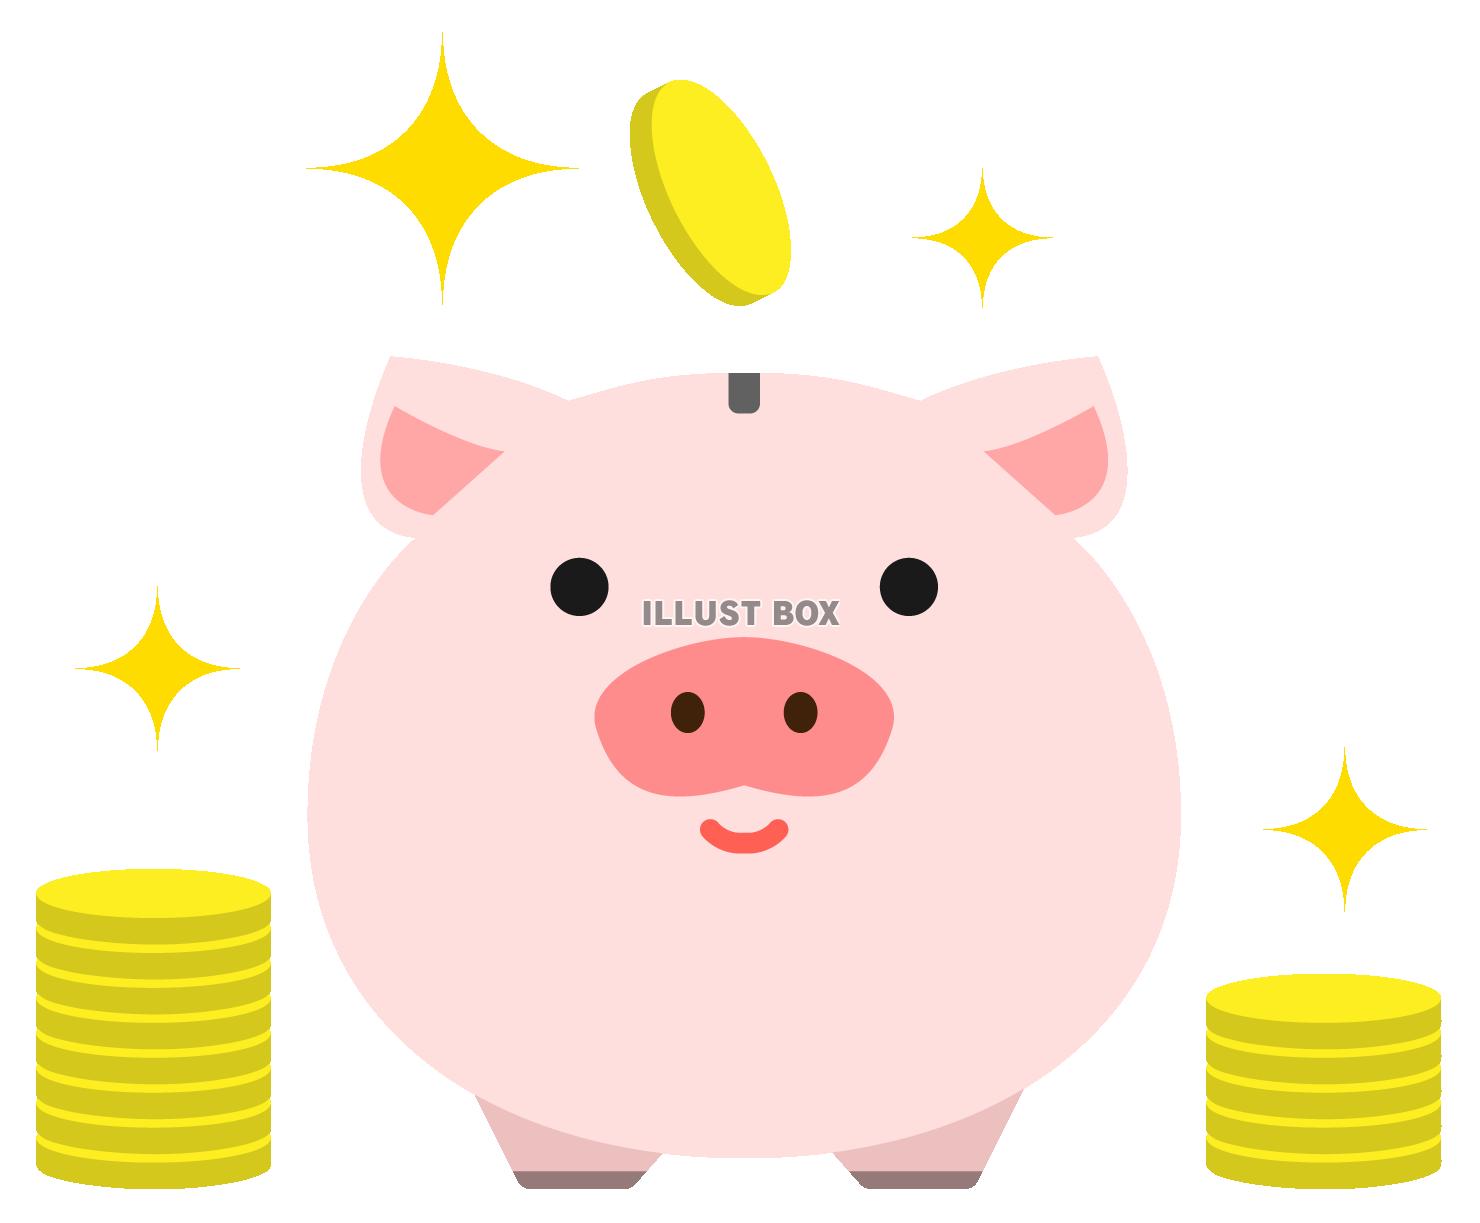 小銭と豚の貯金箱